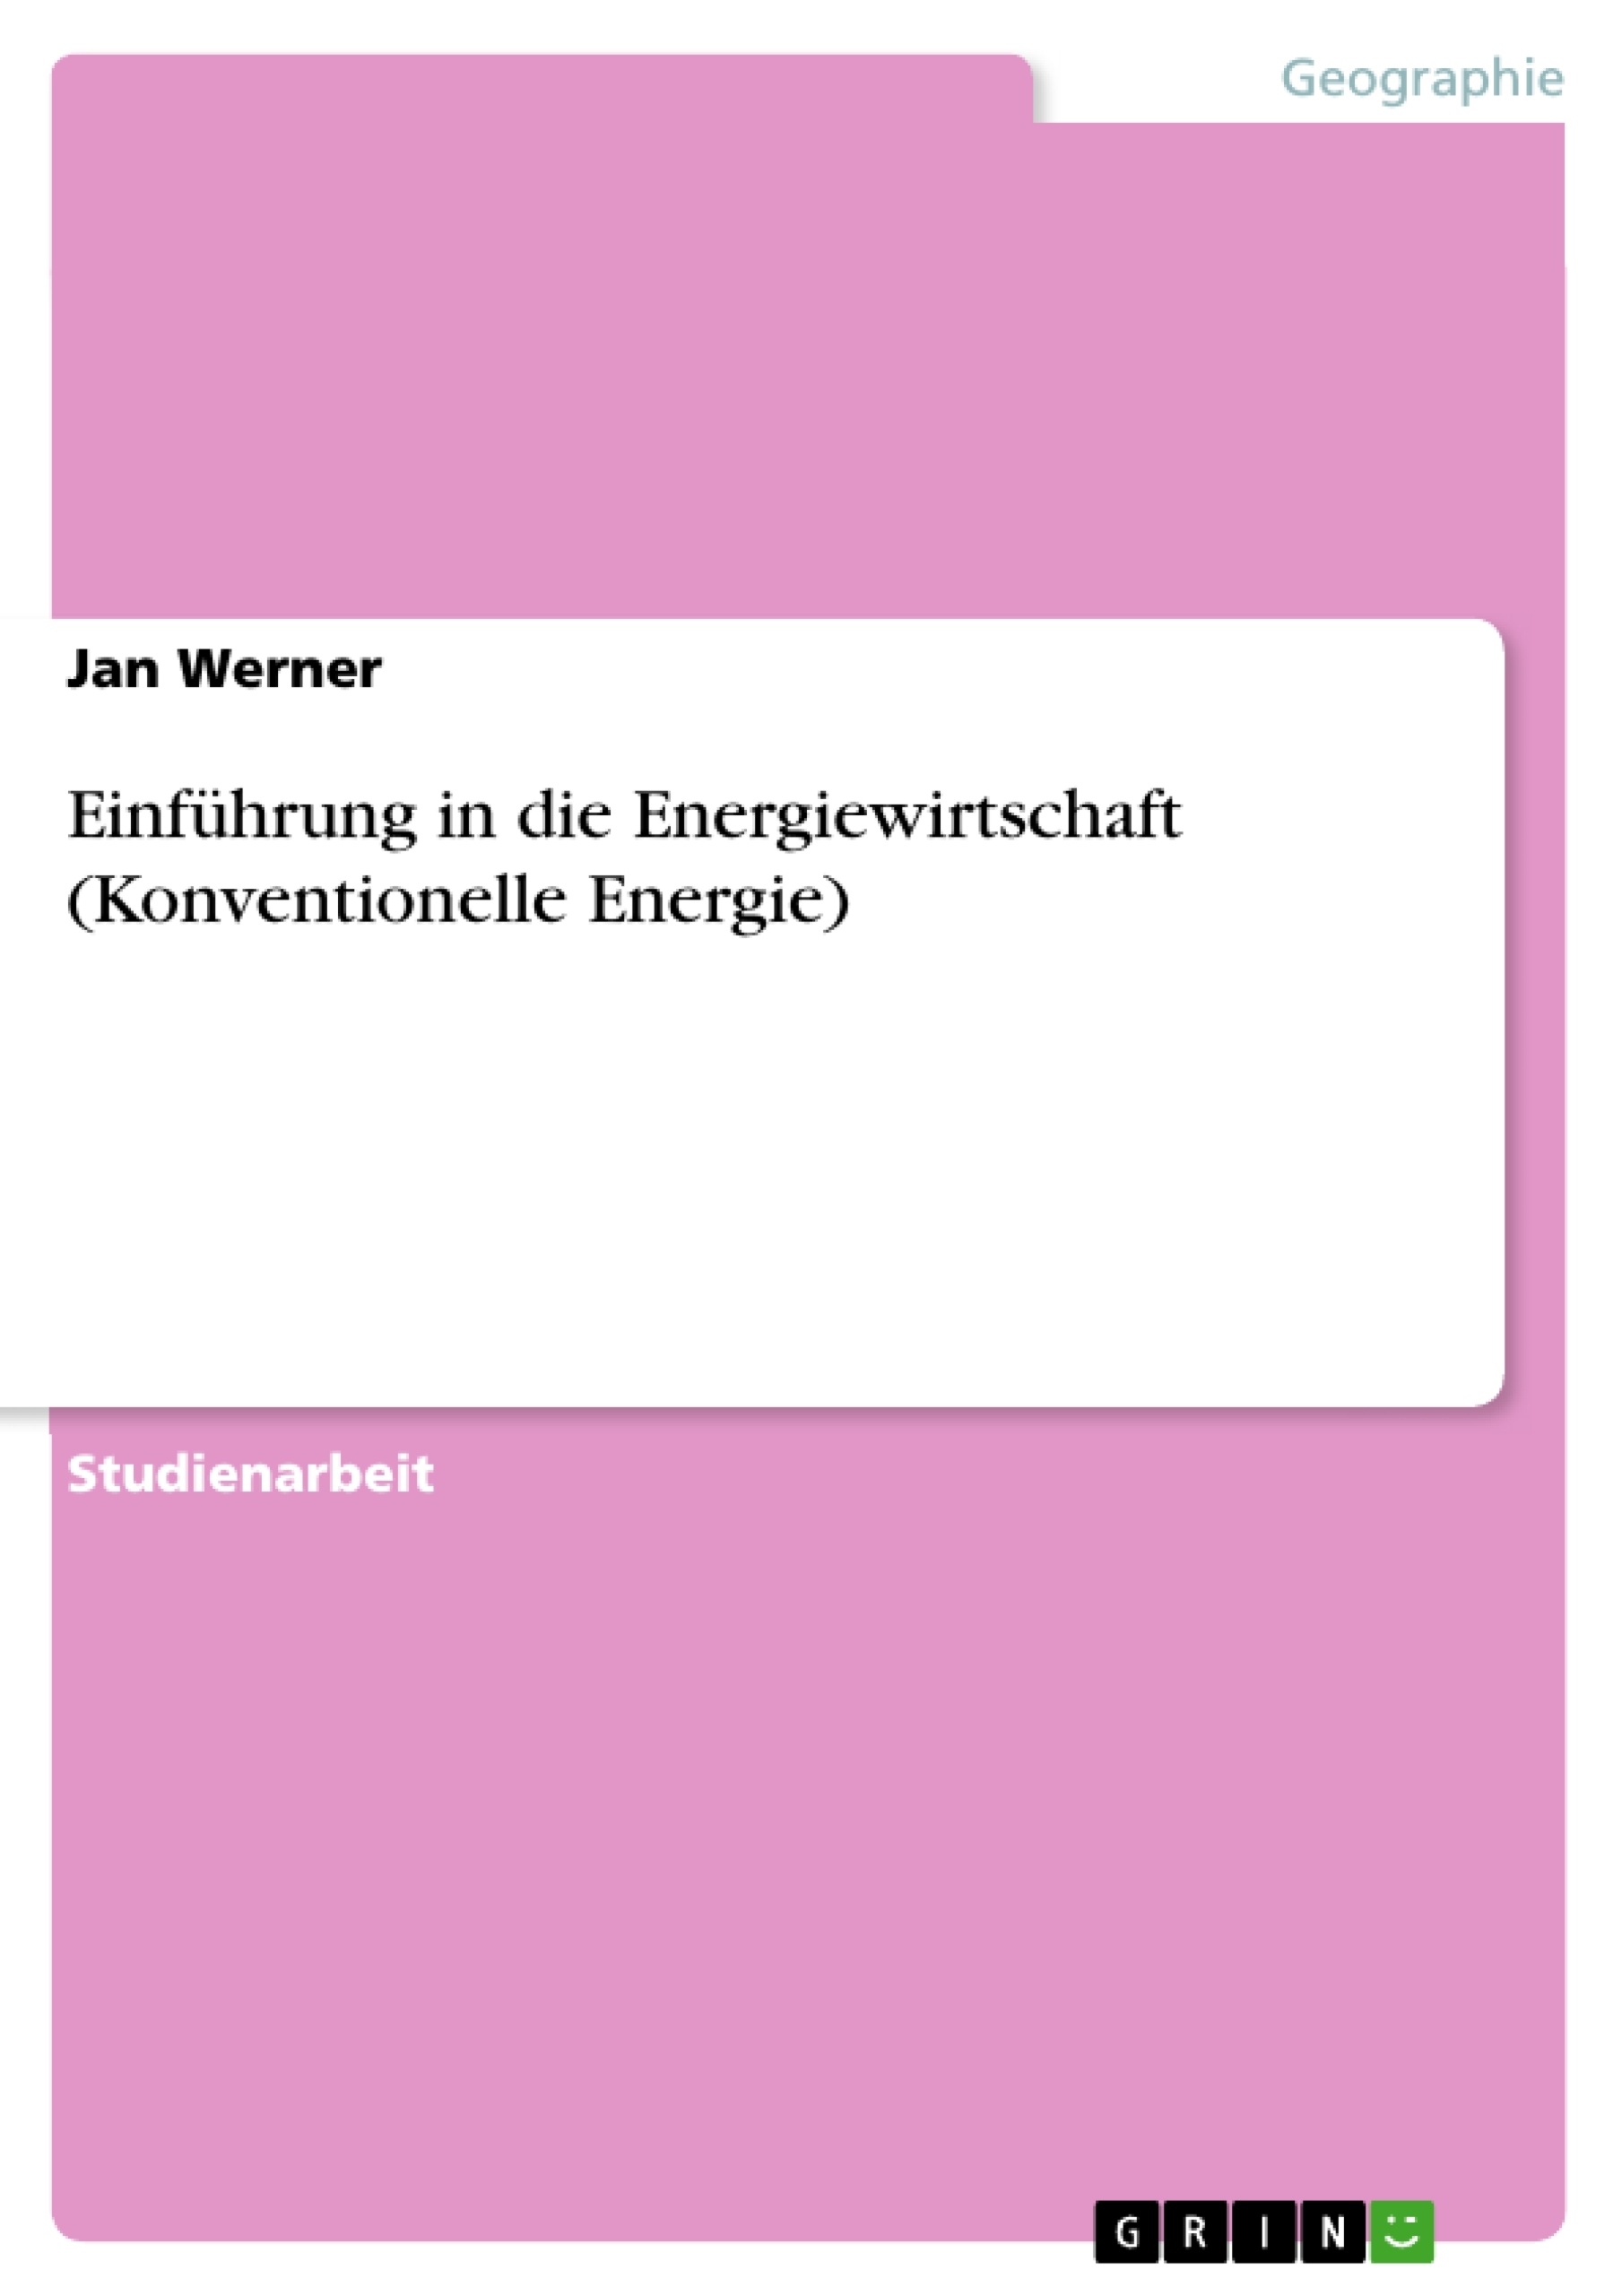 Titre: Einführung in die Energiewirtschaft (Konventionelle Energie)